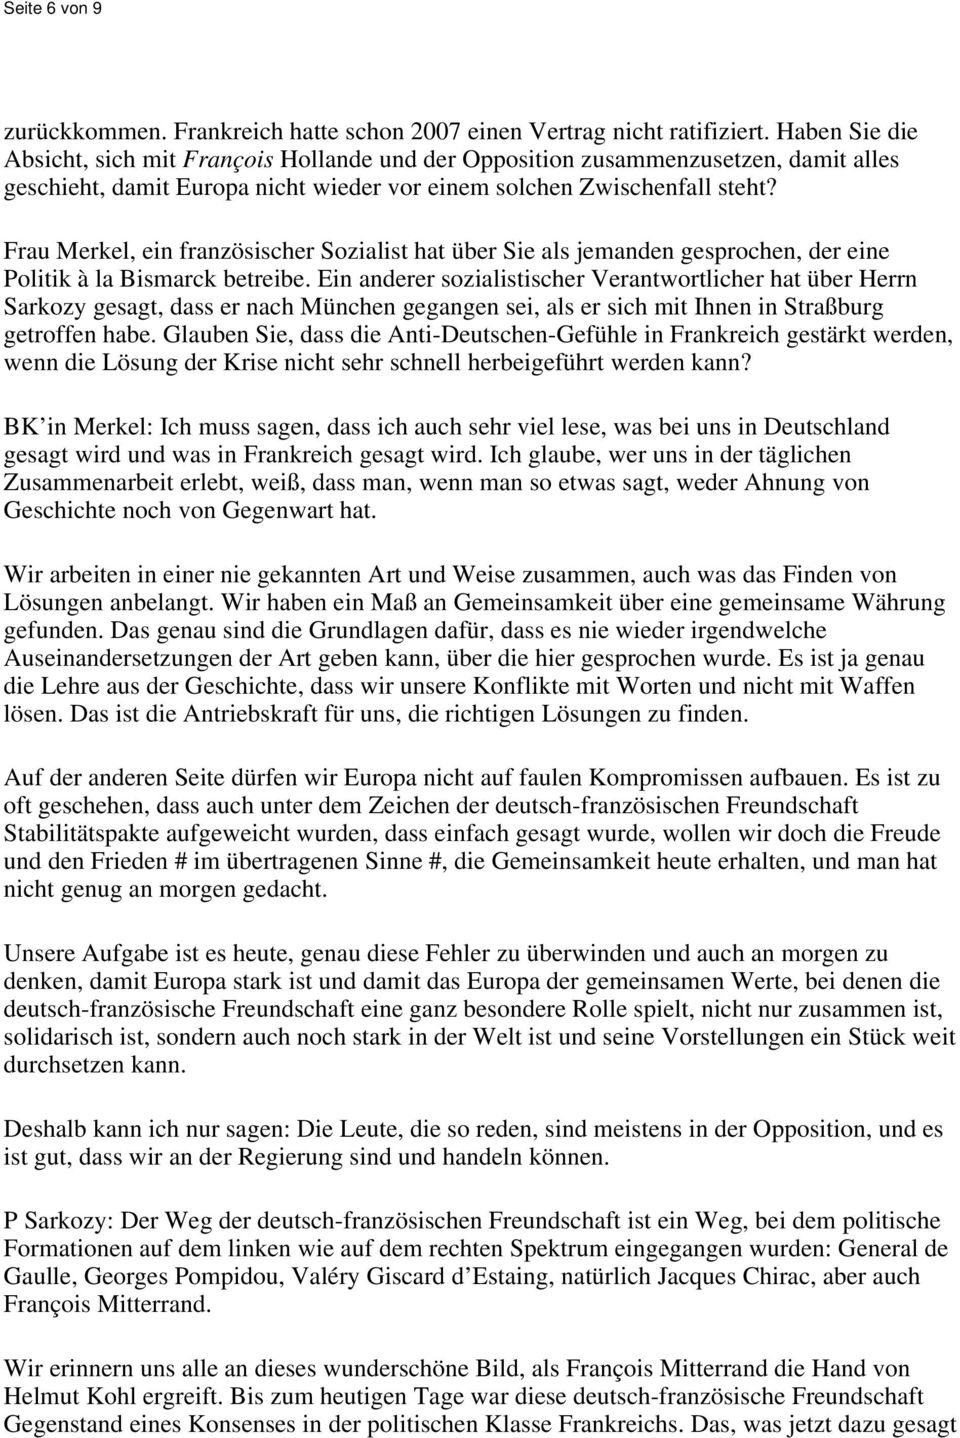 Frau Merkel, ein französischer Sozialist hat über Sie als jemanden gesprochen, der eine Politik à la Bismarck betreibe.